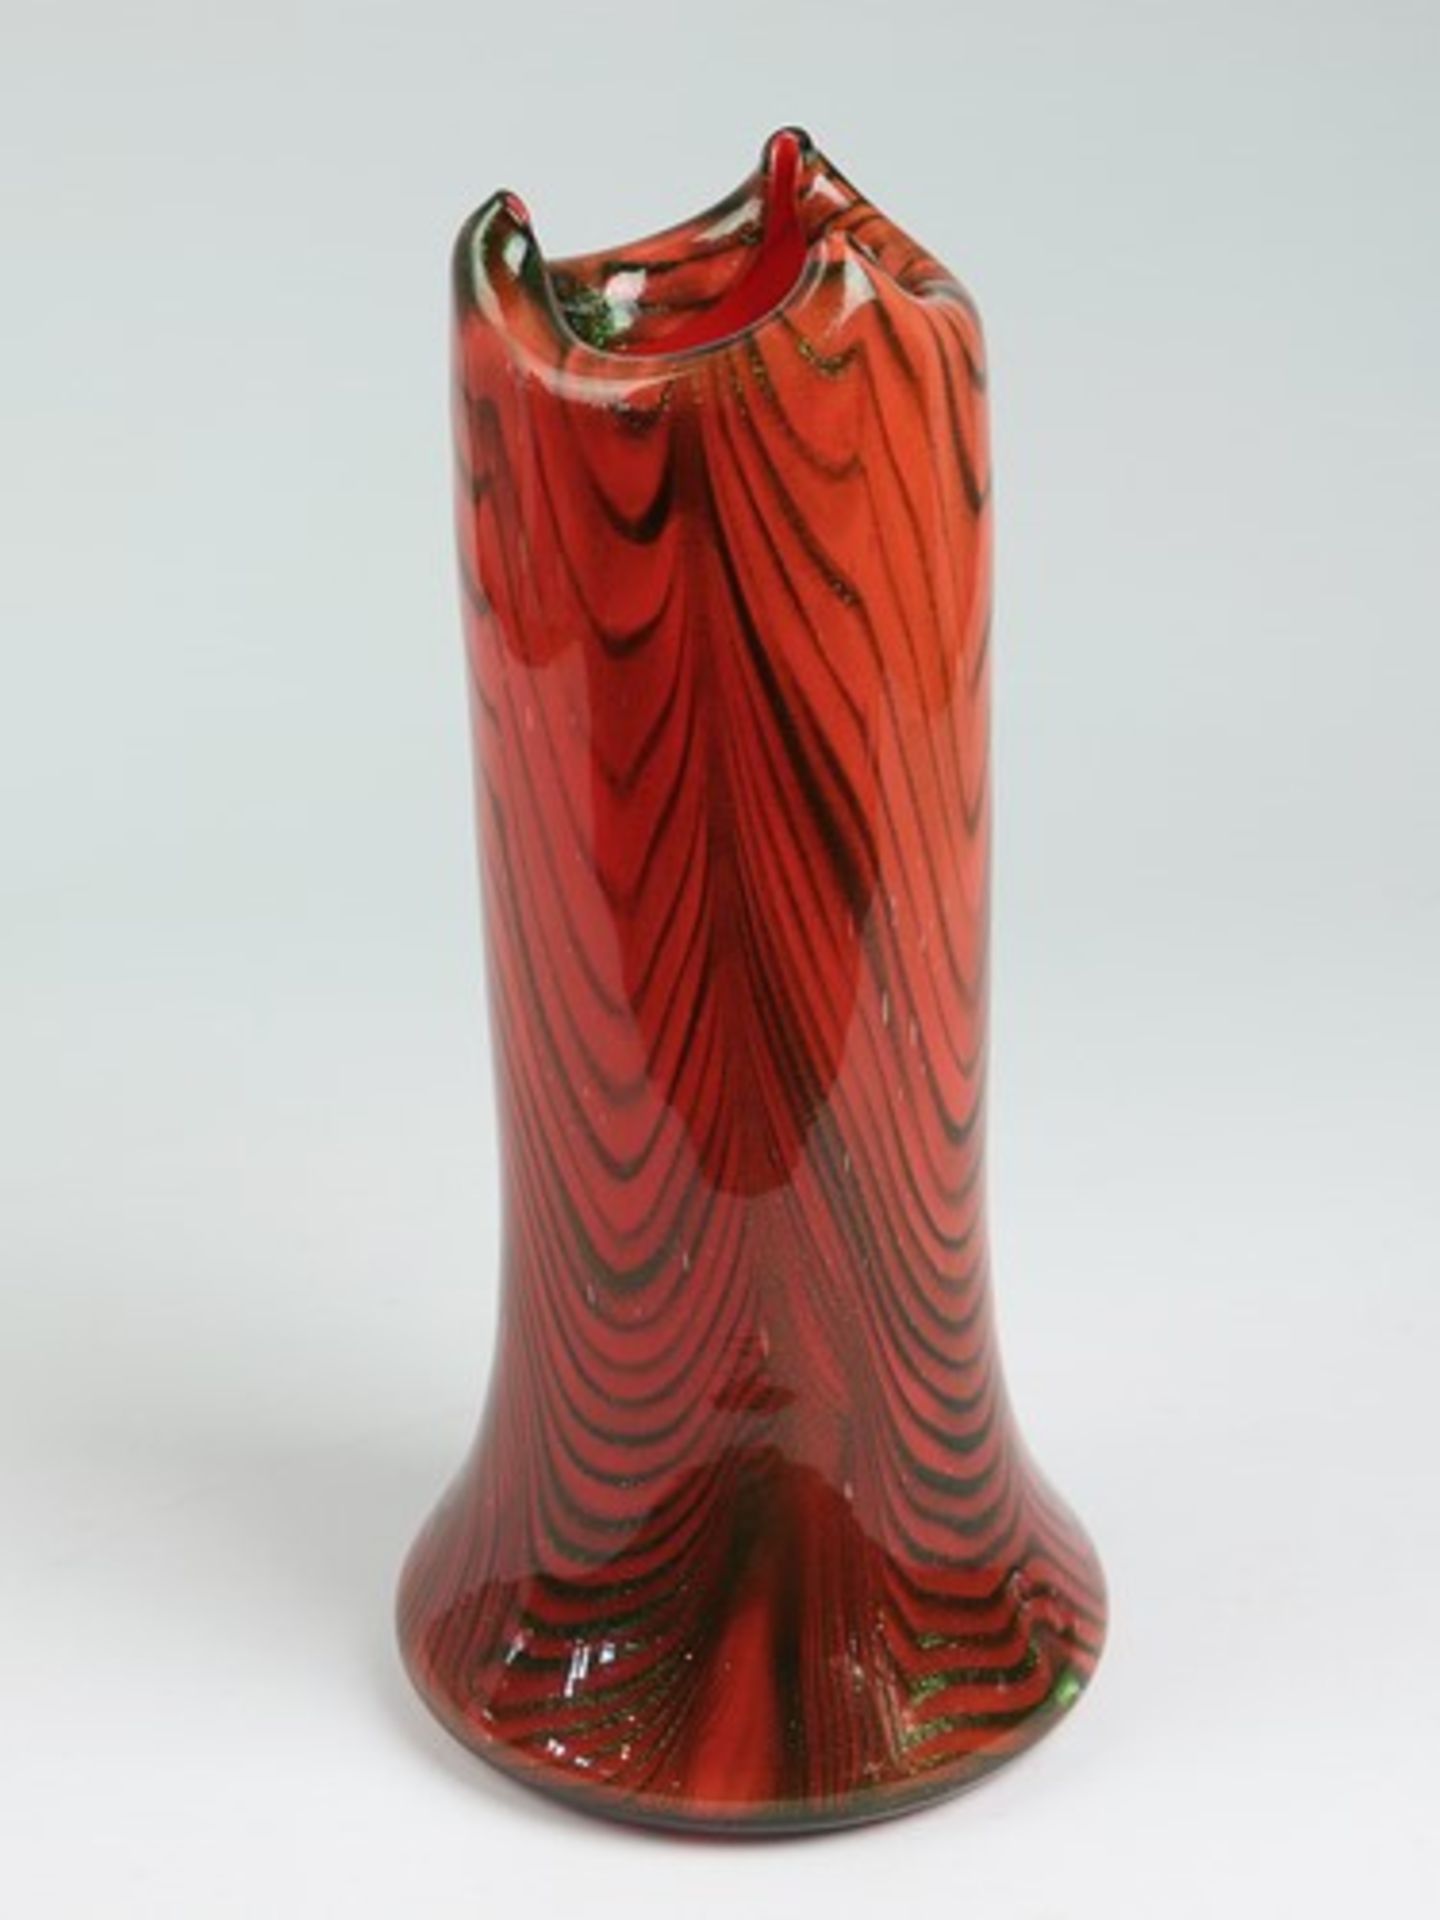 Leerdam Unica - Vase1950/60er J., farbloses dickwandiges Glas, runder breiter Stand m. geschliffenem - Bild 7 aus 7